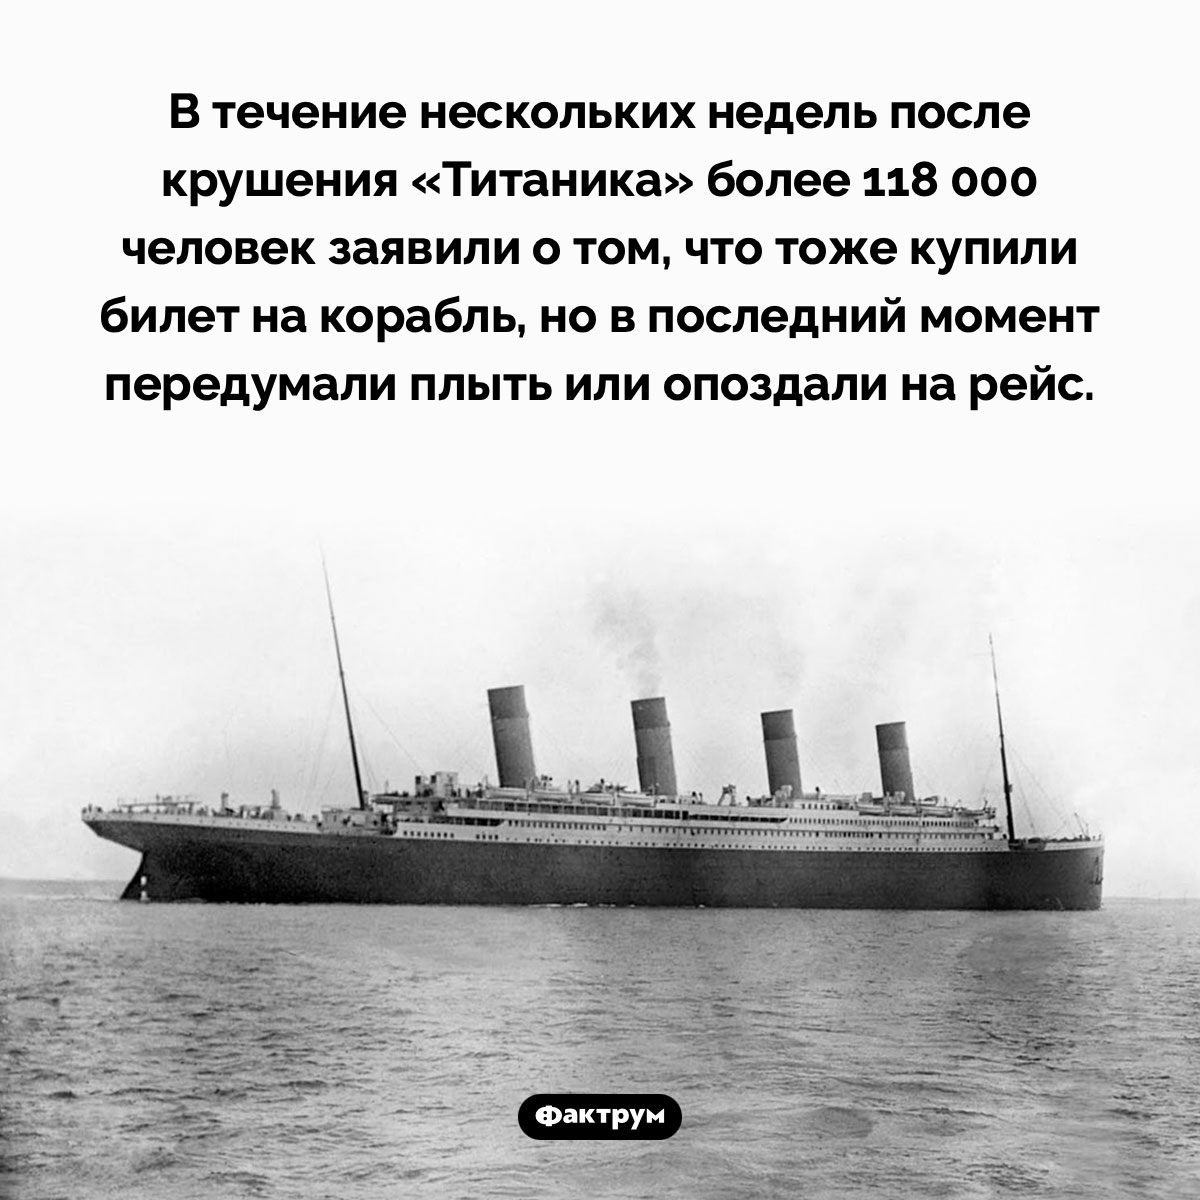 Неуспевшие на «Титаник». В течение нескольких недель после крушения «Титаника» более 118 000 человек заявили о том, что тоже купили билет на корабль, но в последний момент передумали плыть или опоздали на рейс.